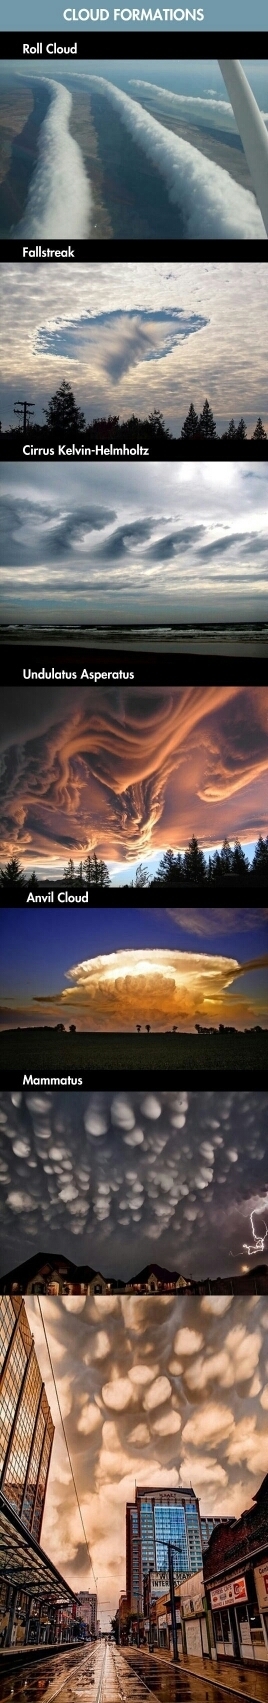 nuages - meme